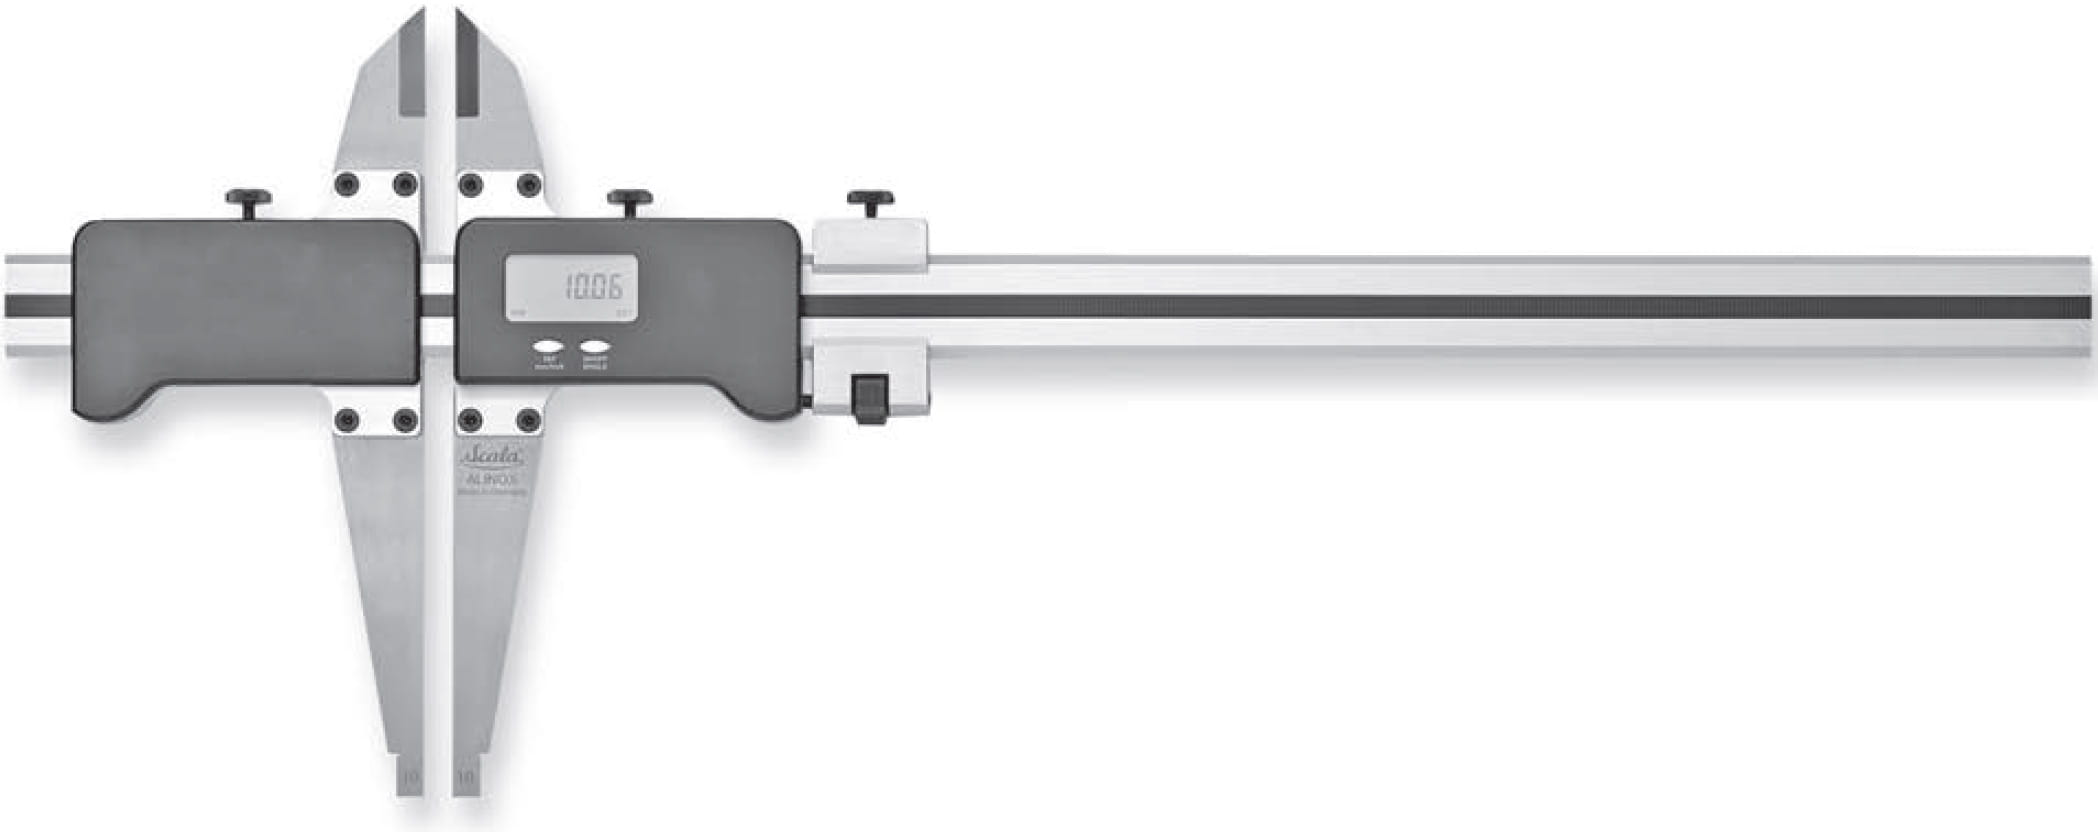 Digitaler Präzisions-Werkstattmessschieber mit Messerspitzen auf weißem Hintergrund. Mit Schnäbel und Messerspitzen. Mit Digitalanzeige und Feineinstellung.  Alinox Combi Duo von Scala.